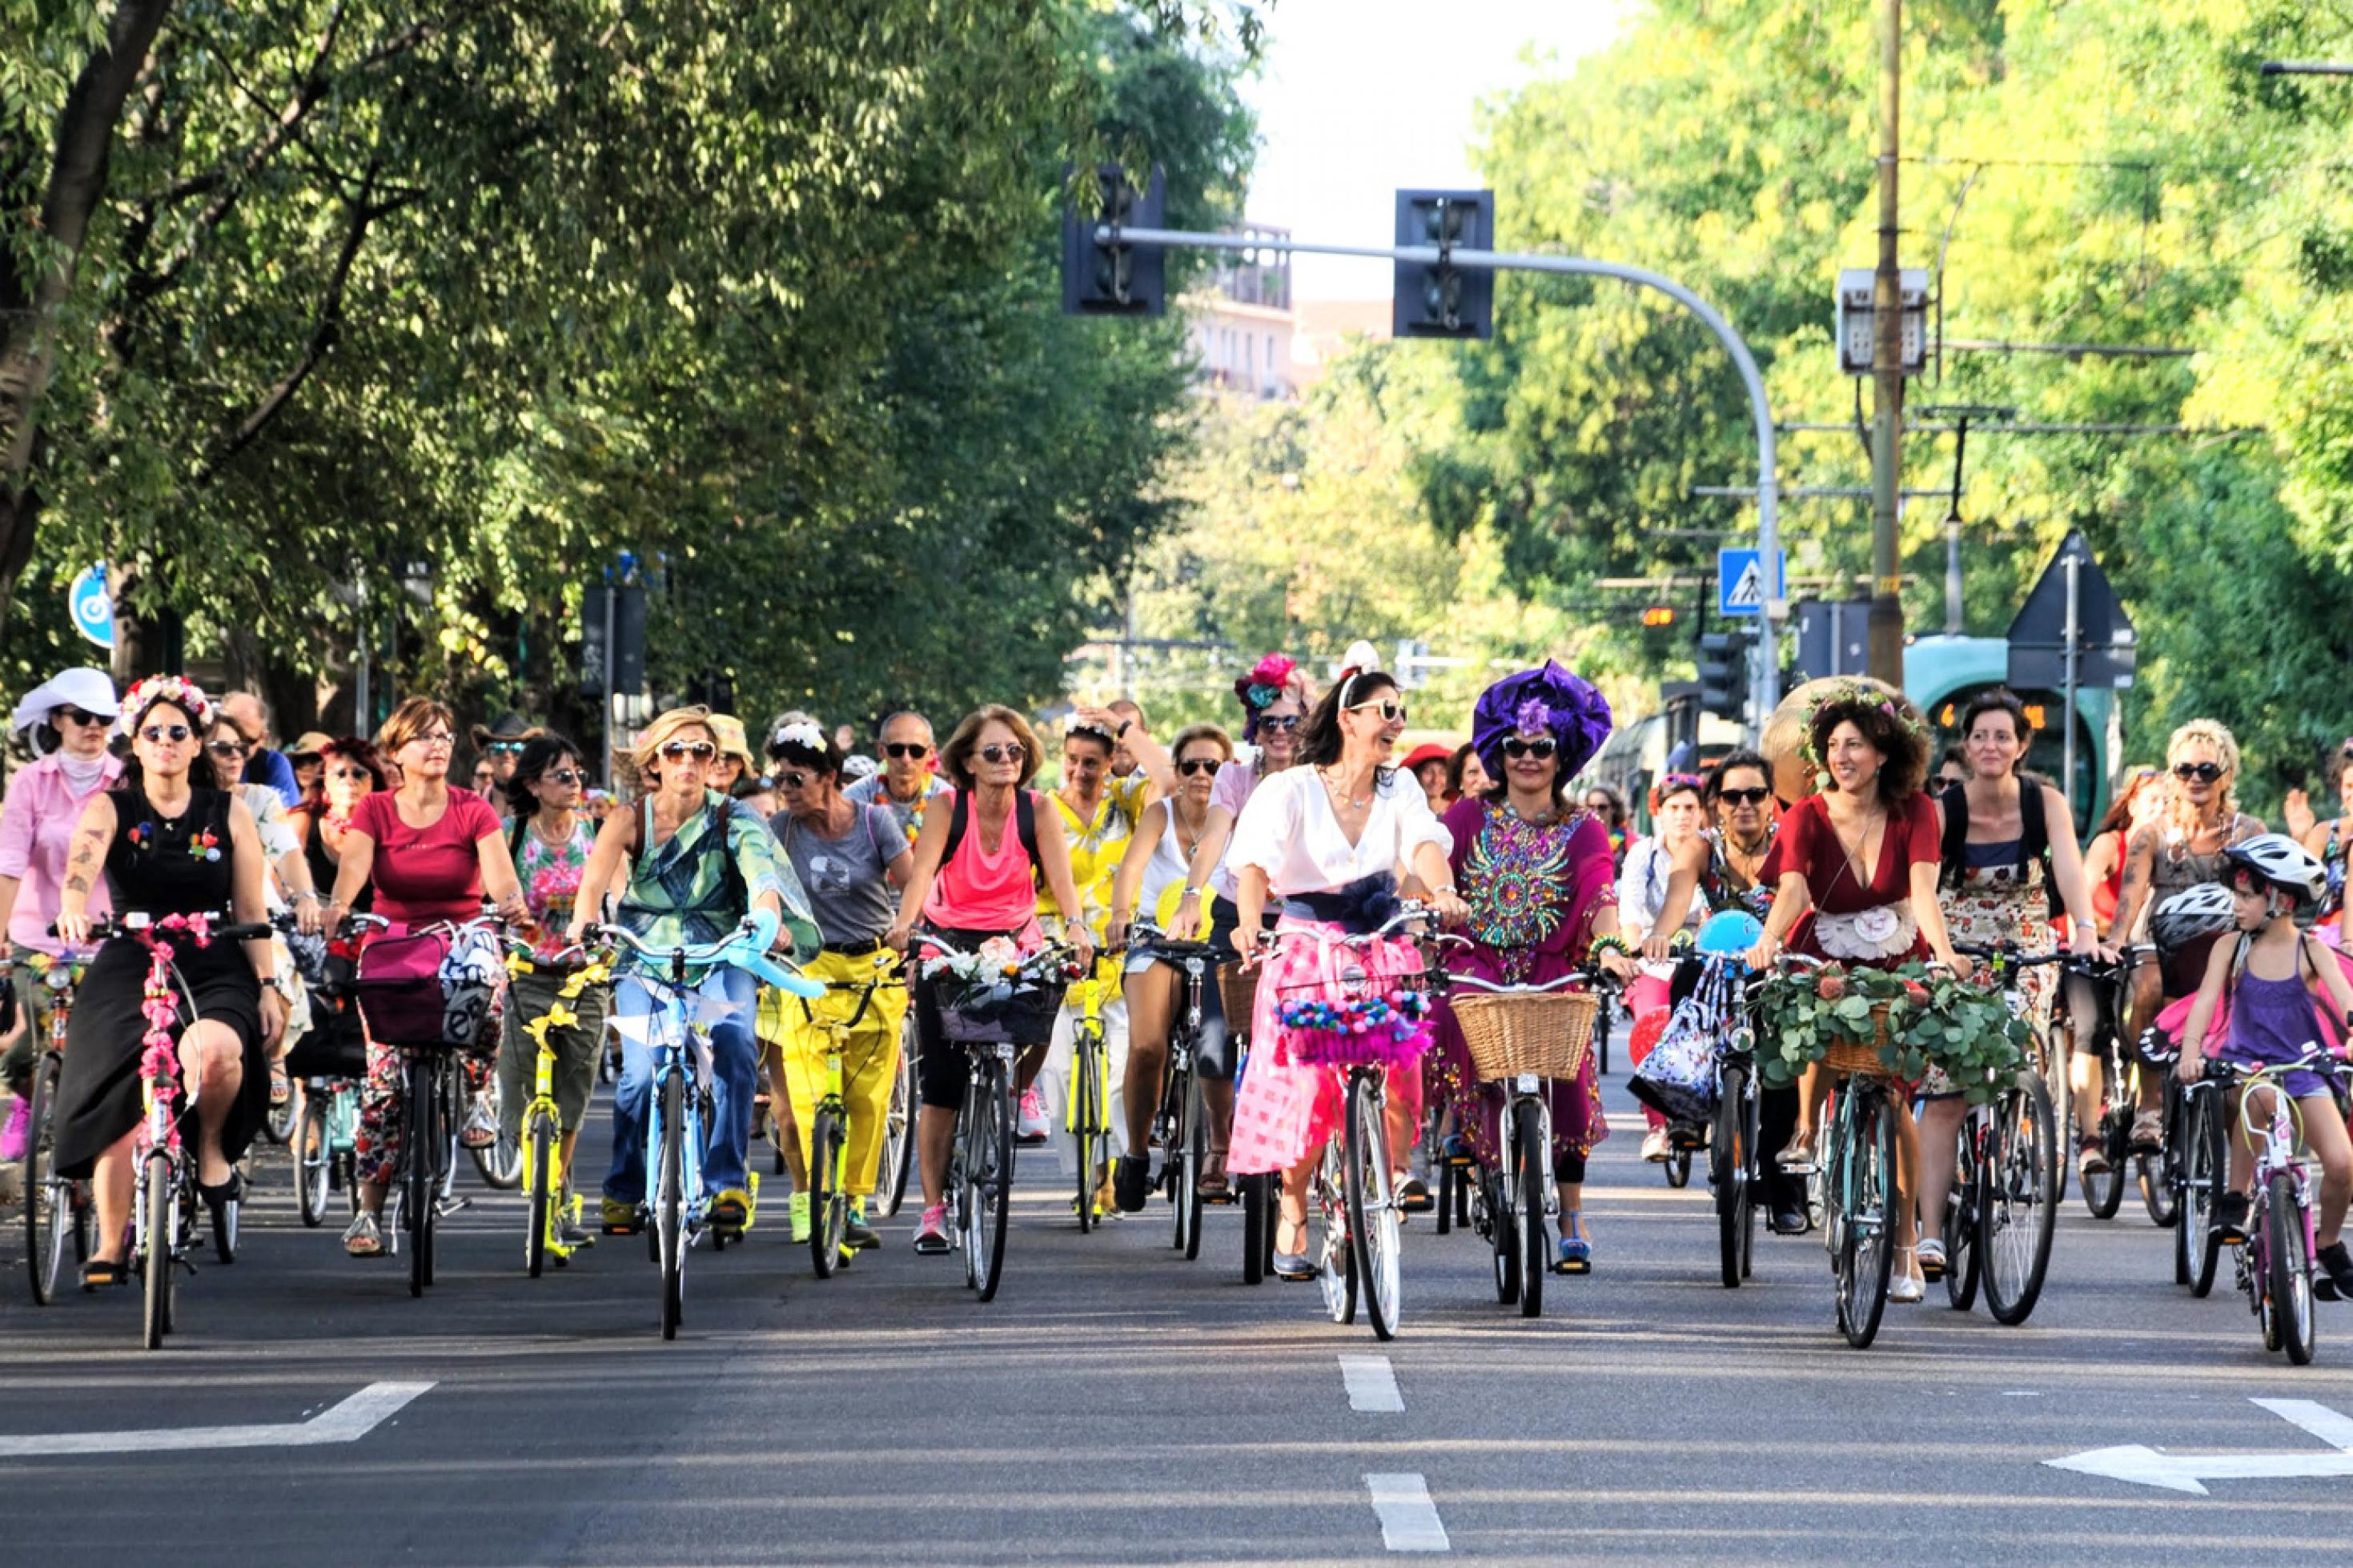 Beim autofreien Sonntag fahren in Milano Frauen und Kinder dicht gedrängt über zwei breite Fahrspuren. Sie tragen bunte Kleider und Hosen und haben ihre Räder mit Blumen und Girlanden geschmückt.